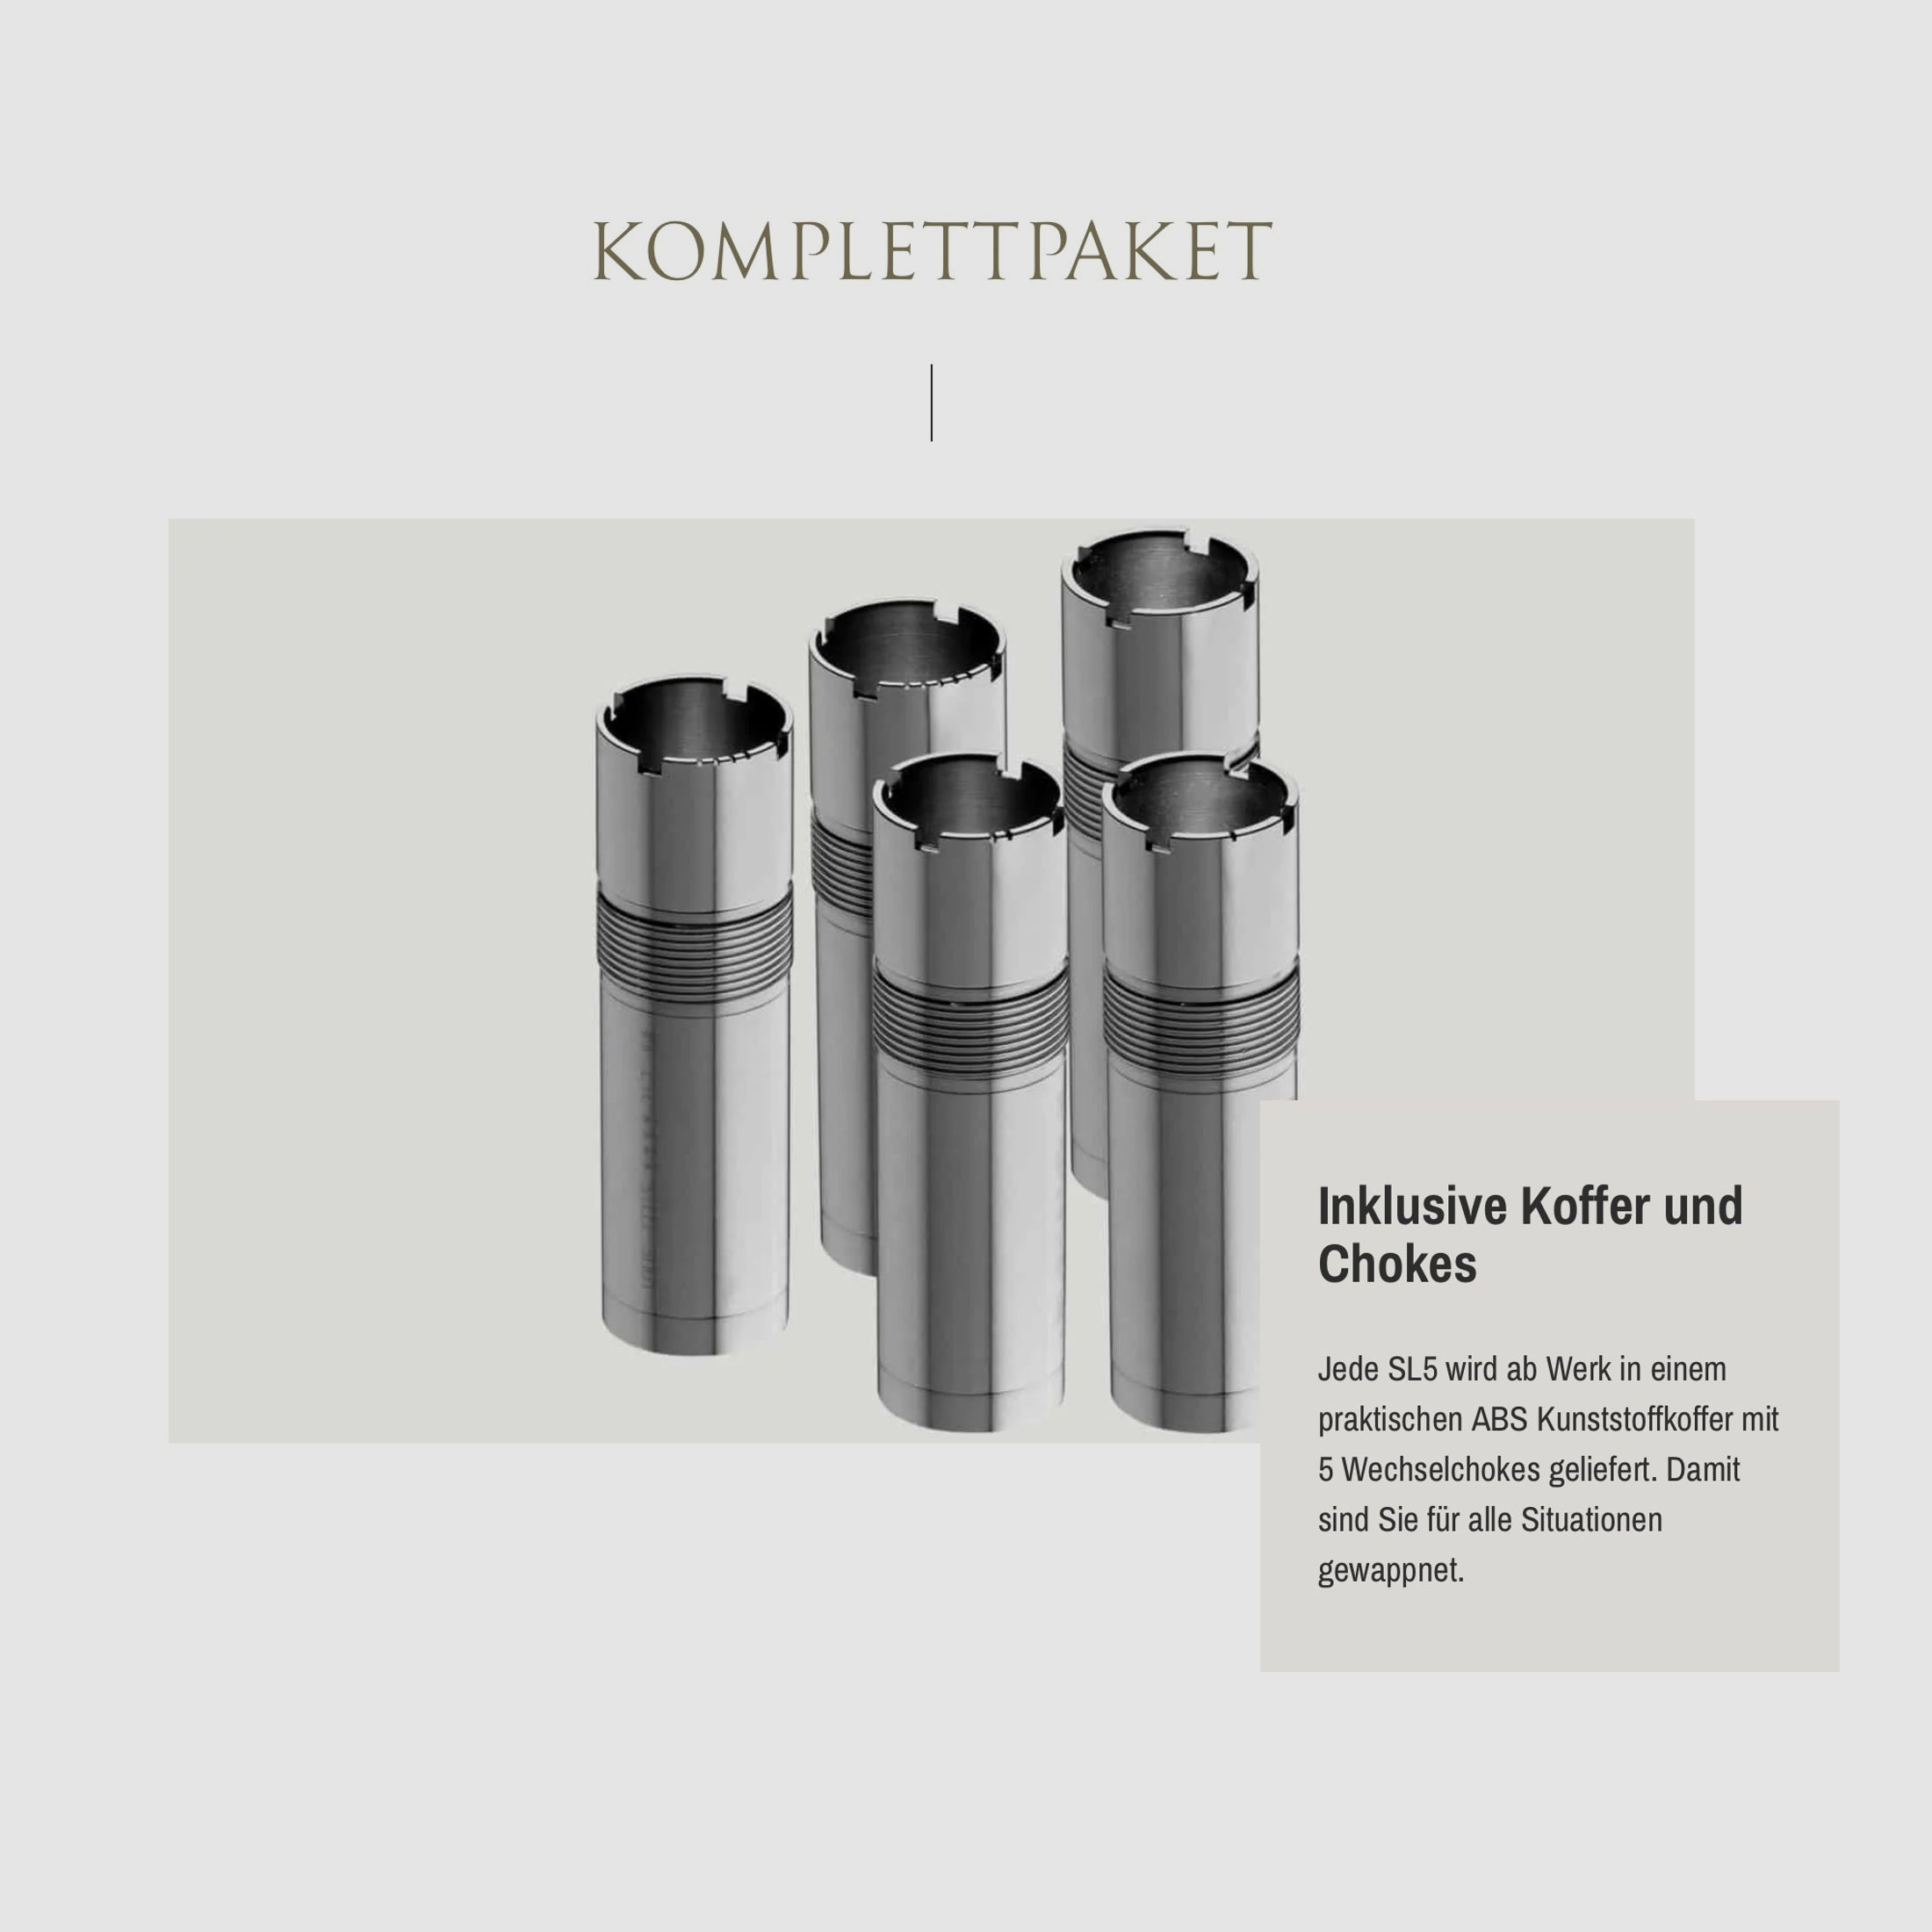 SAUER Selbstladeflinte SL5 Select Kaliber 12/76 76cm Lauflänge Wechselchokes Angebotspaket